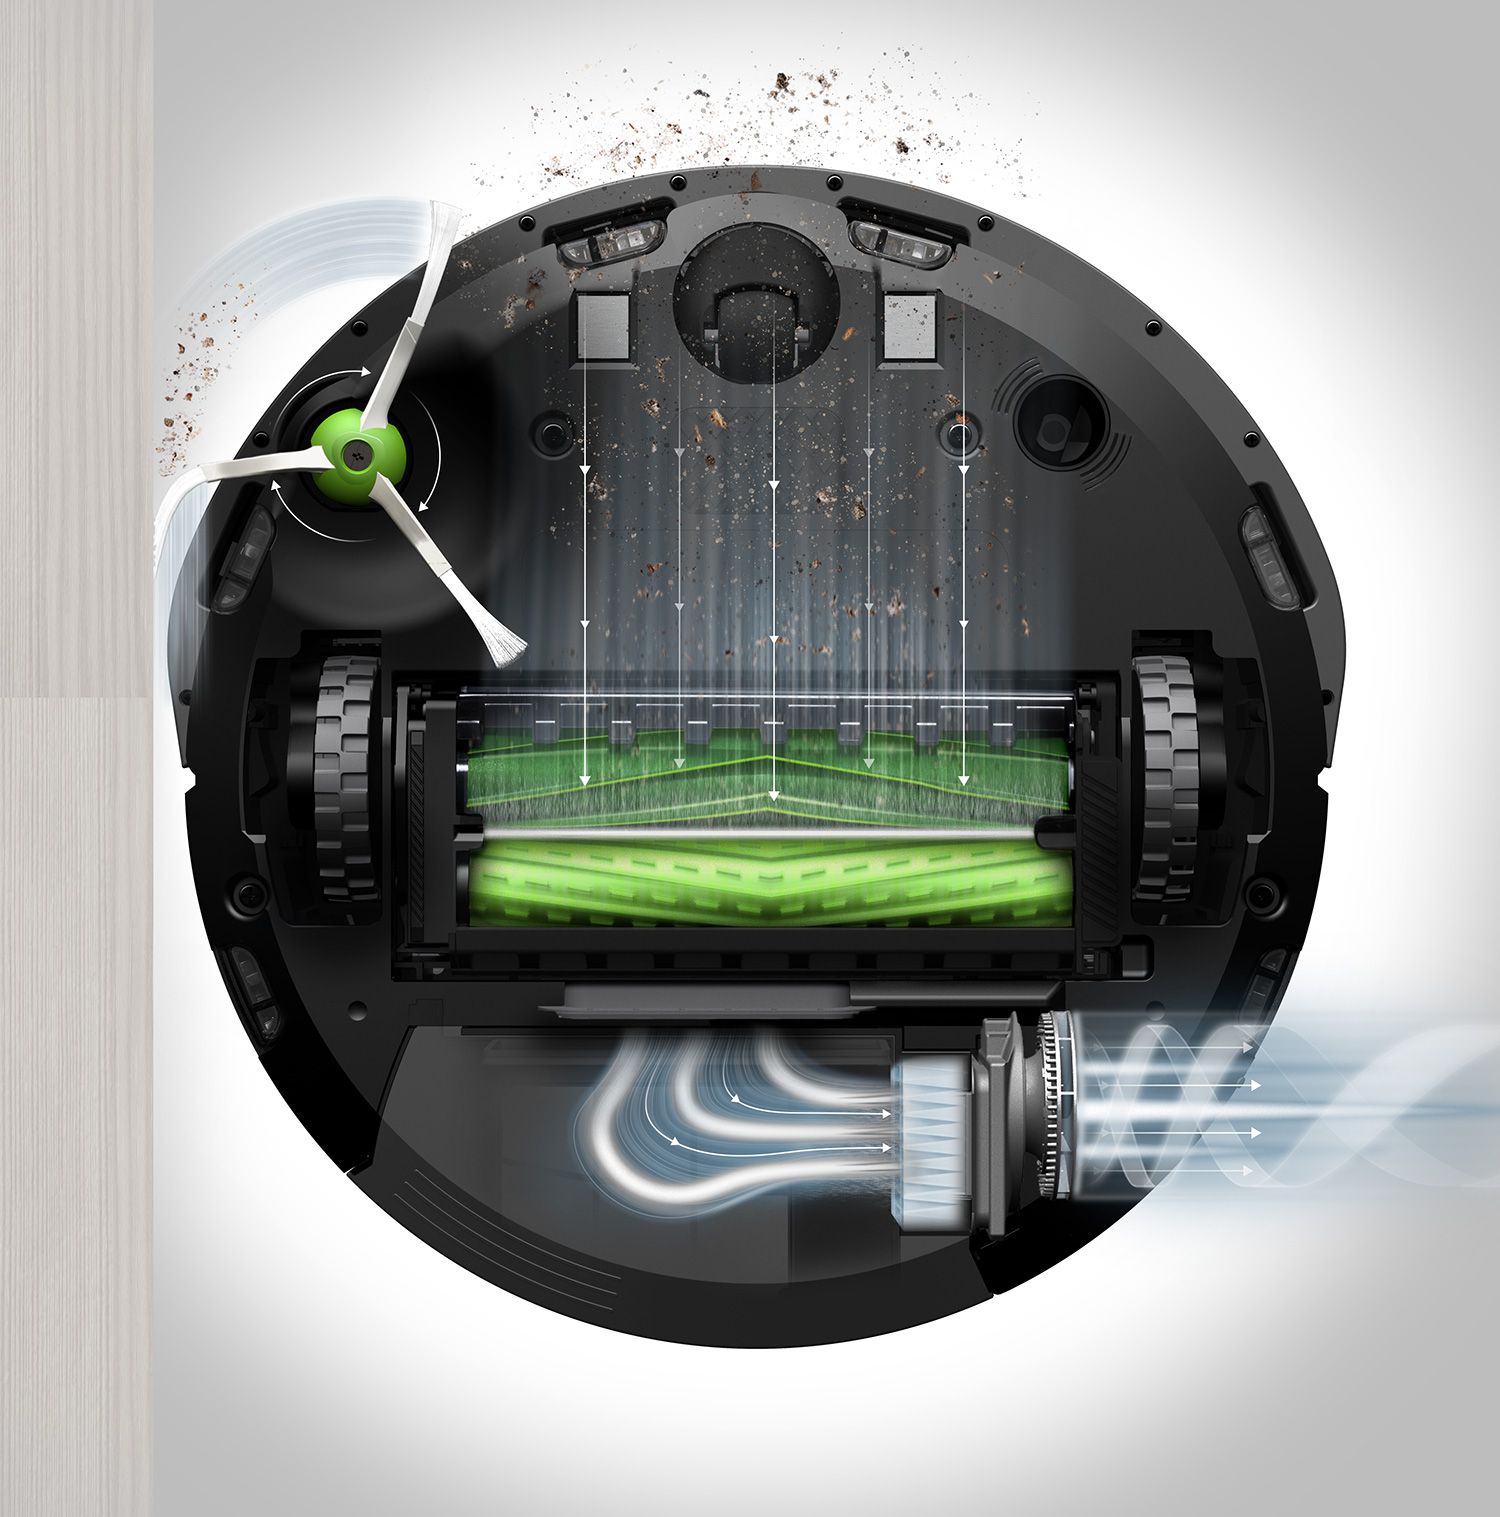 Roomba i7+ PLUS,  робот - пылесос для сухой уборки